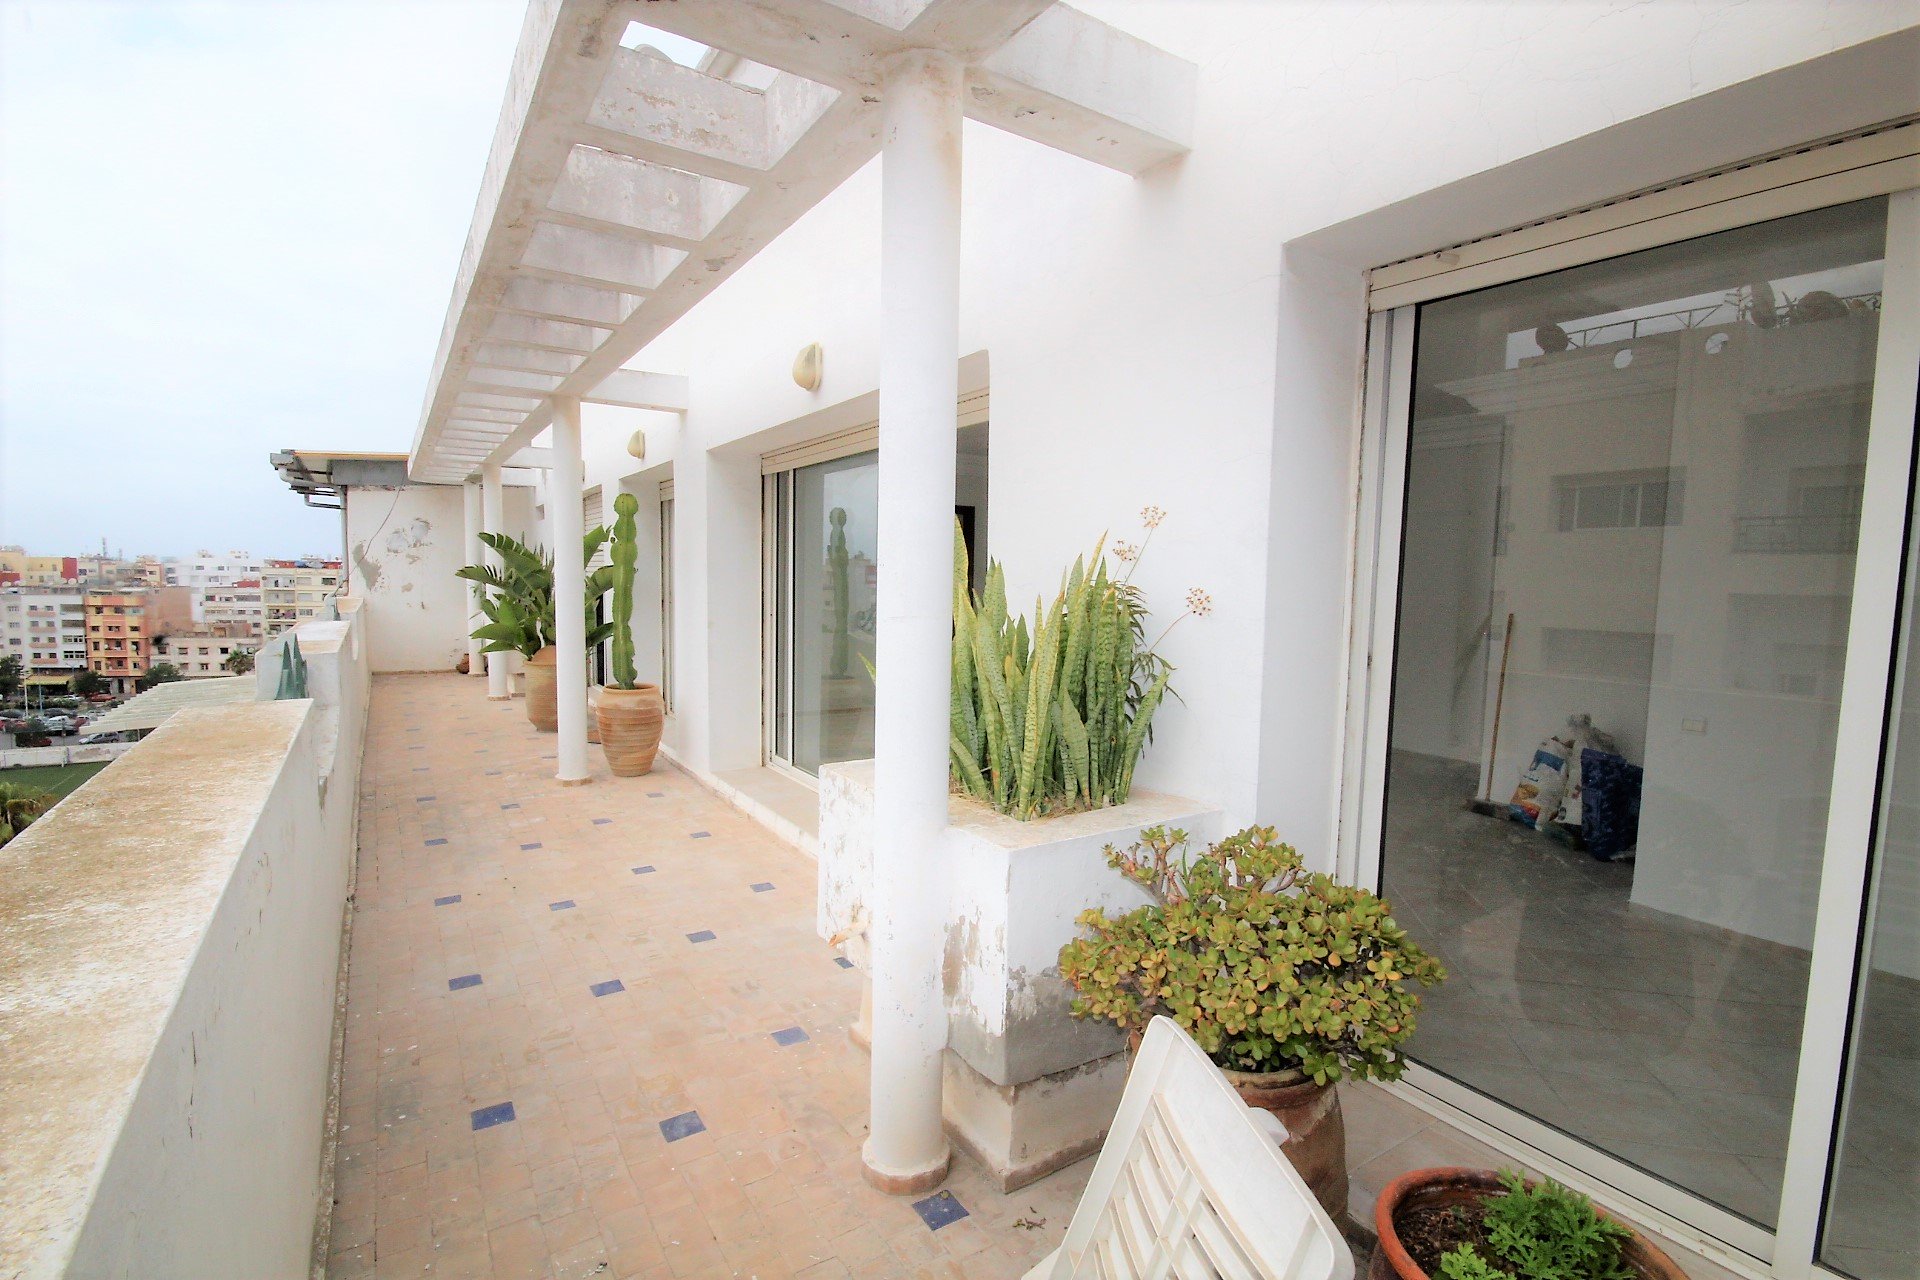 Maroc, Casablanca, Bourgogne, loue appartement 3 chambres avec terrasse